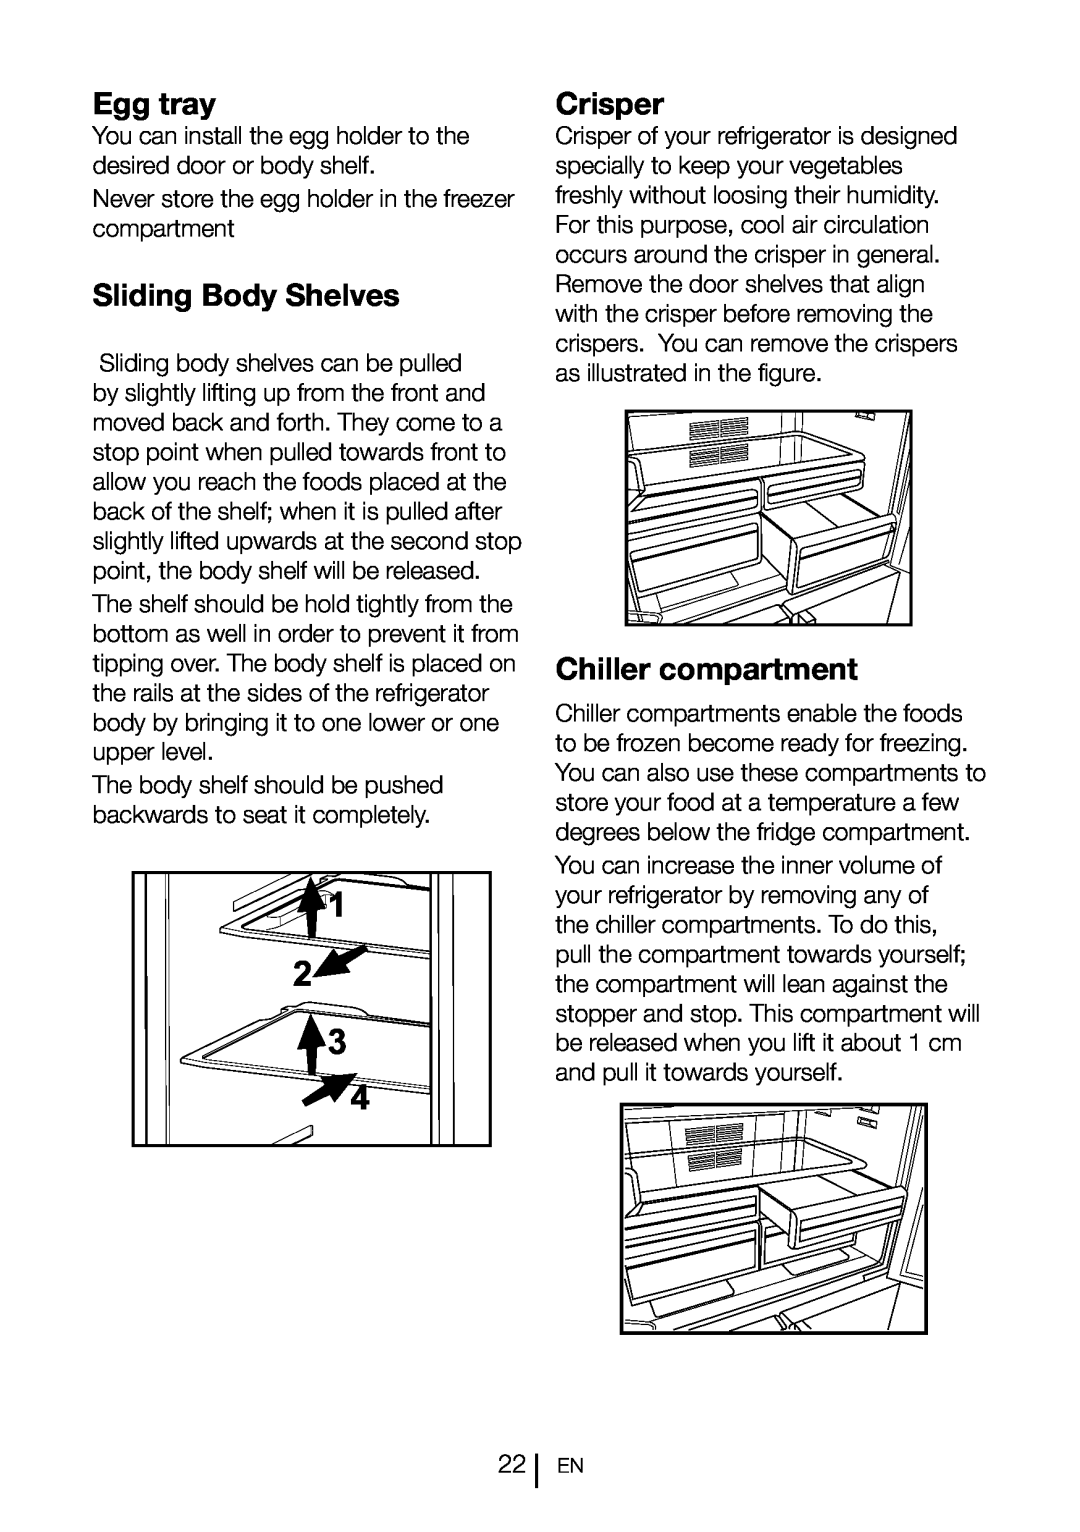 Blomberg KQD 1360X instruction manual 1 3 4, Egg tray, Sliding Body Shelves, Crisper, Chiller compartment 